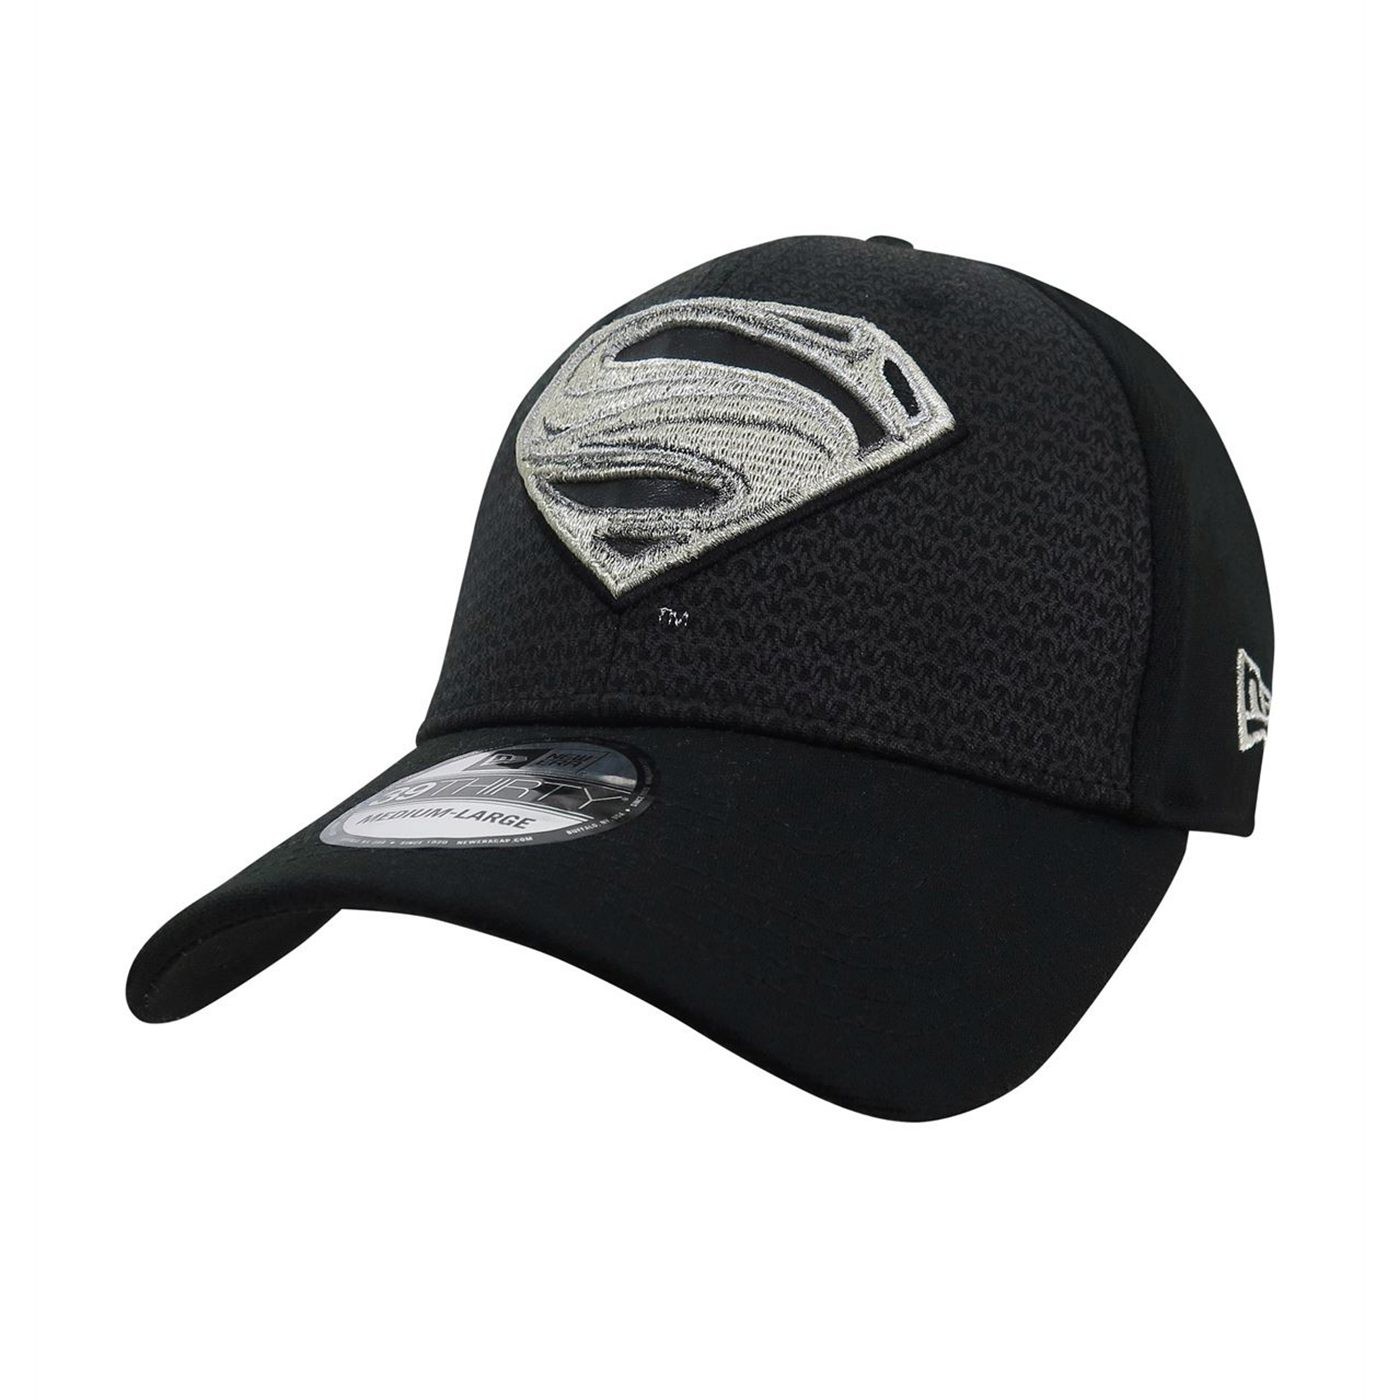 Superman DC Comics Felt Men's Adjustable Snapback Cap Hat 